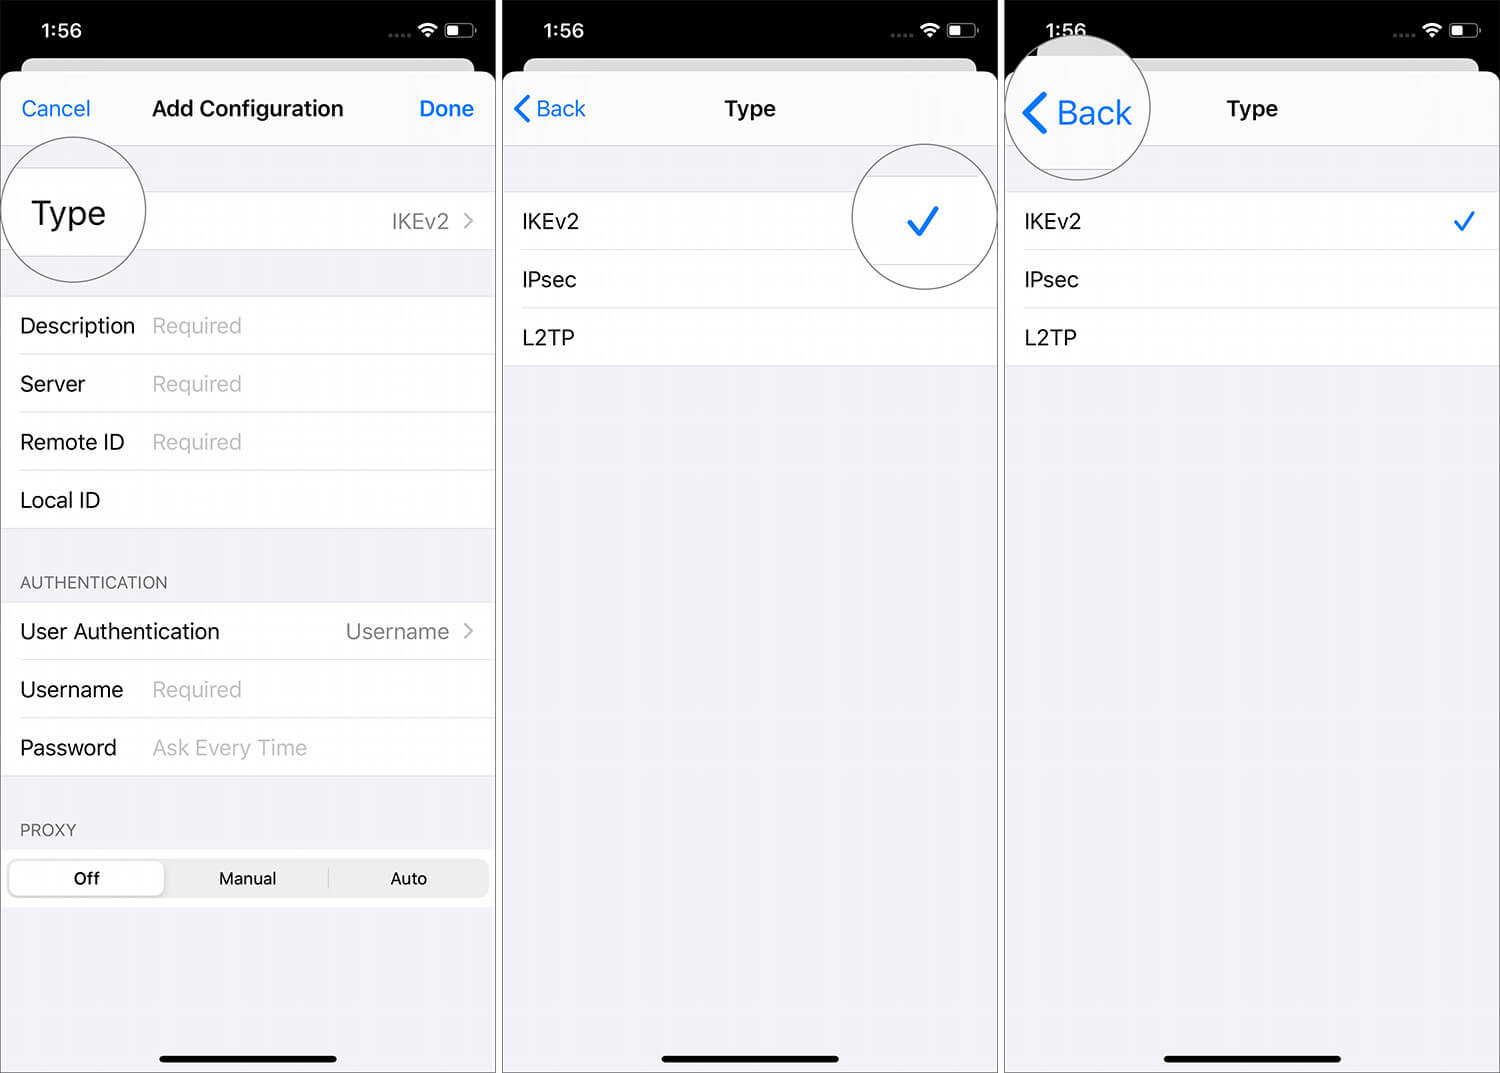 كيفية إعداد وتكوين اتصال VPN على iPhone و iPad - %categories